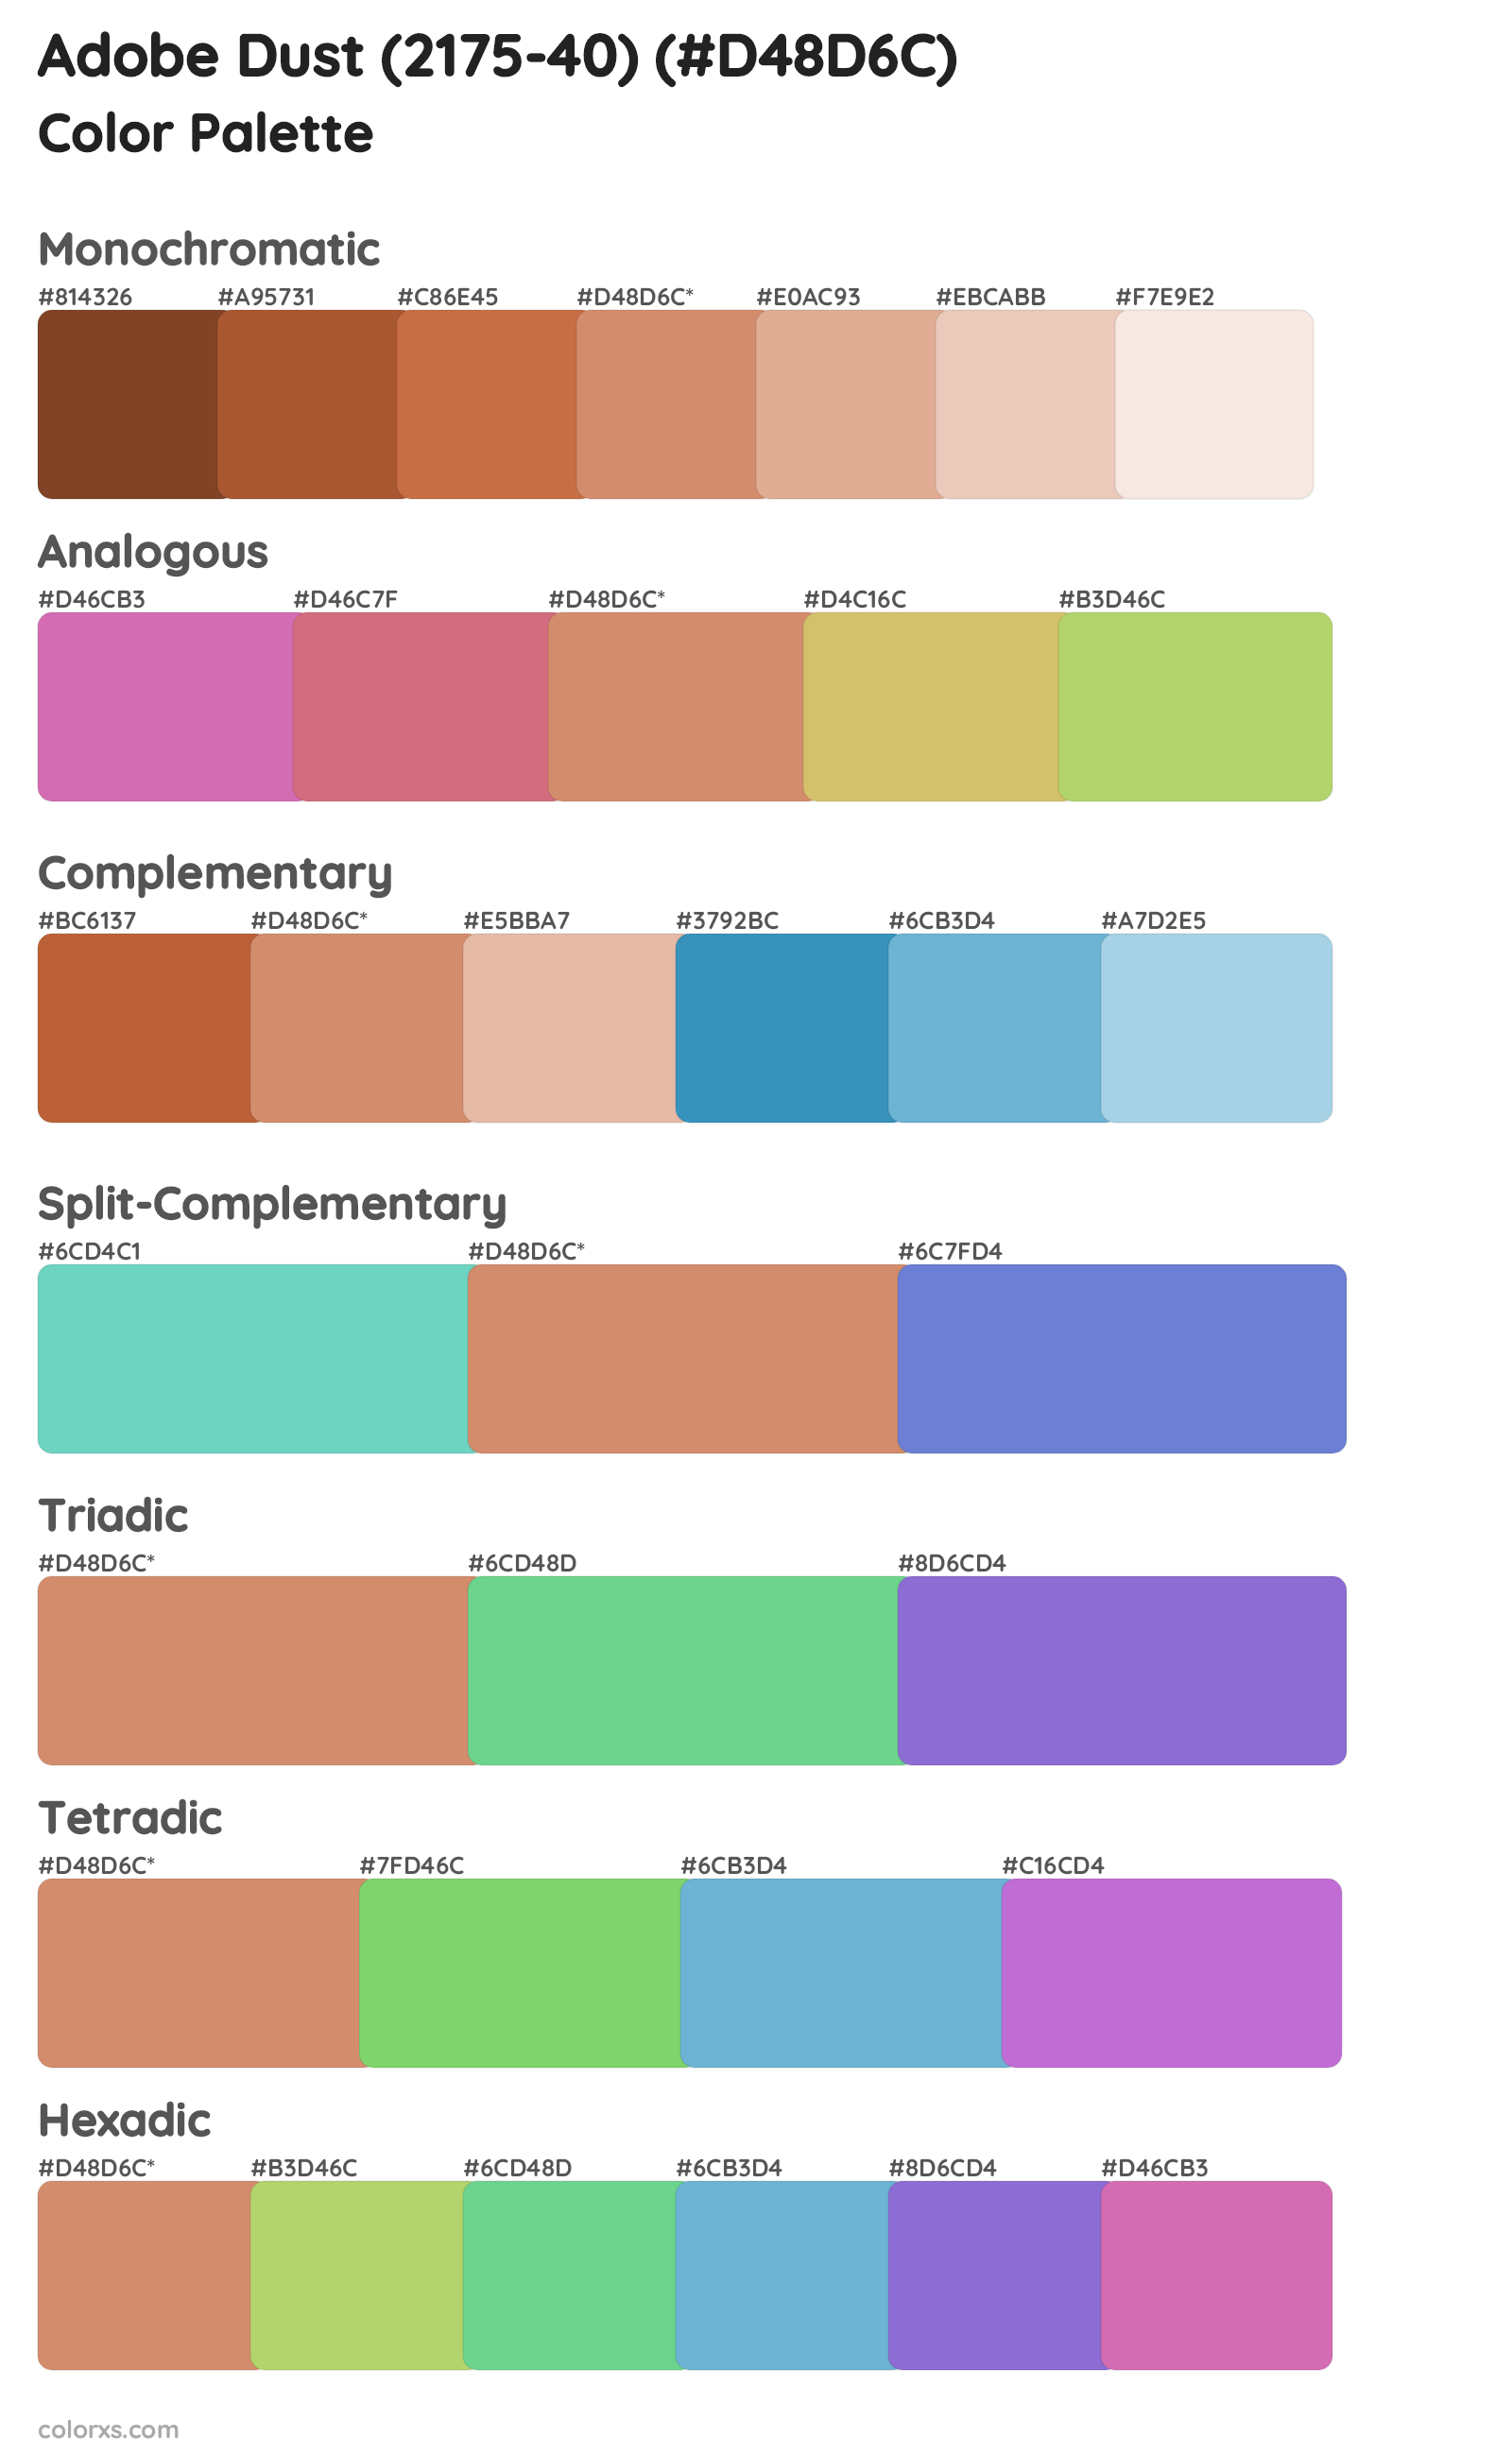 Adobe Dust (2175-40) Color Scheme Palettes